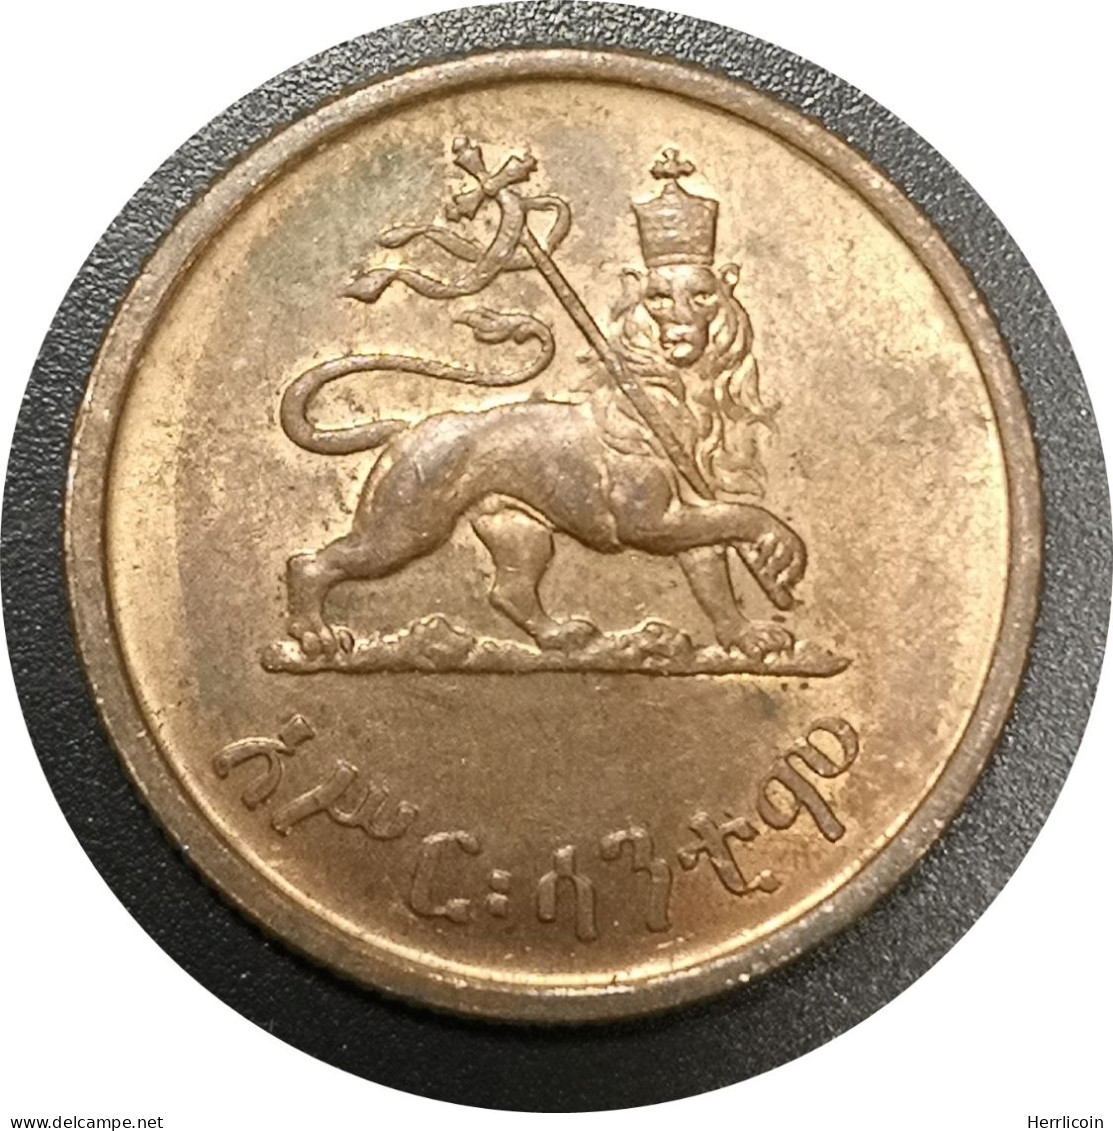 Monnaie Ethiopie - 1936 (1945 - 1975) 10 Santeem - Hailé Selassié I - Ethiopia